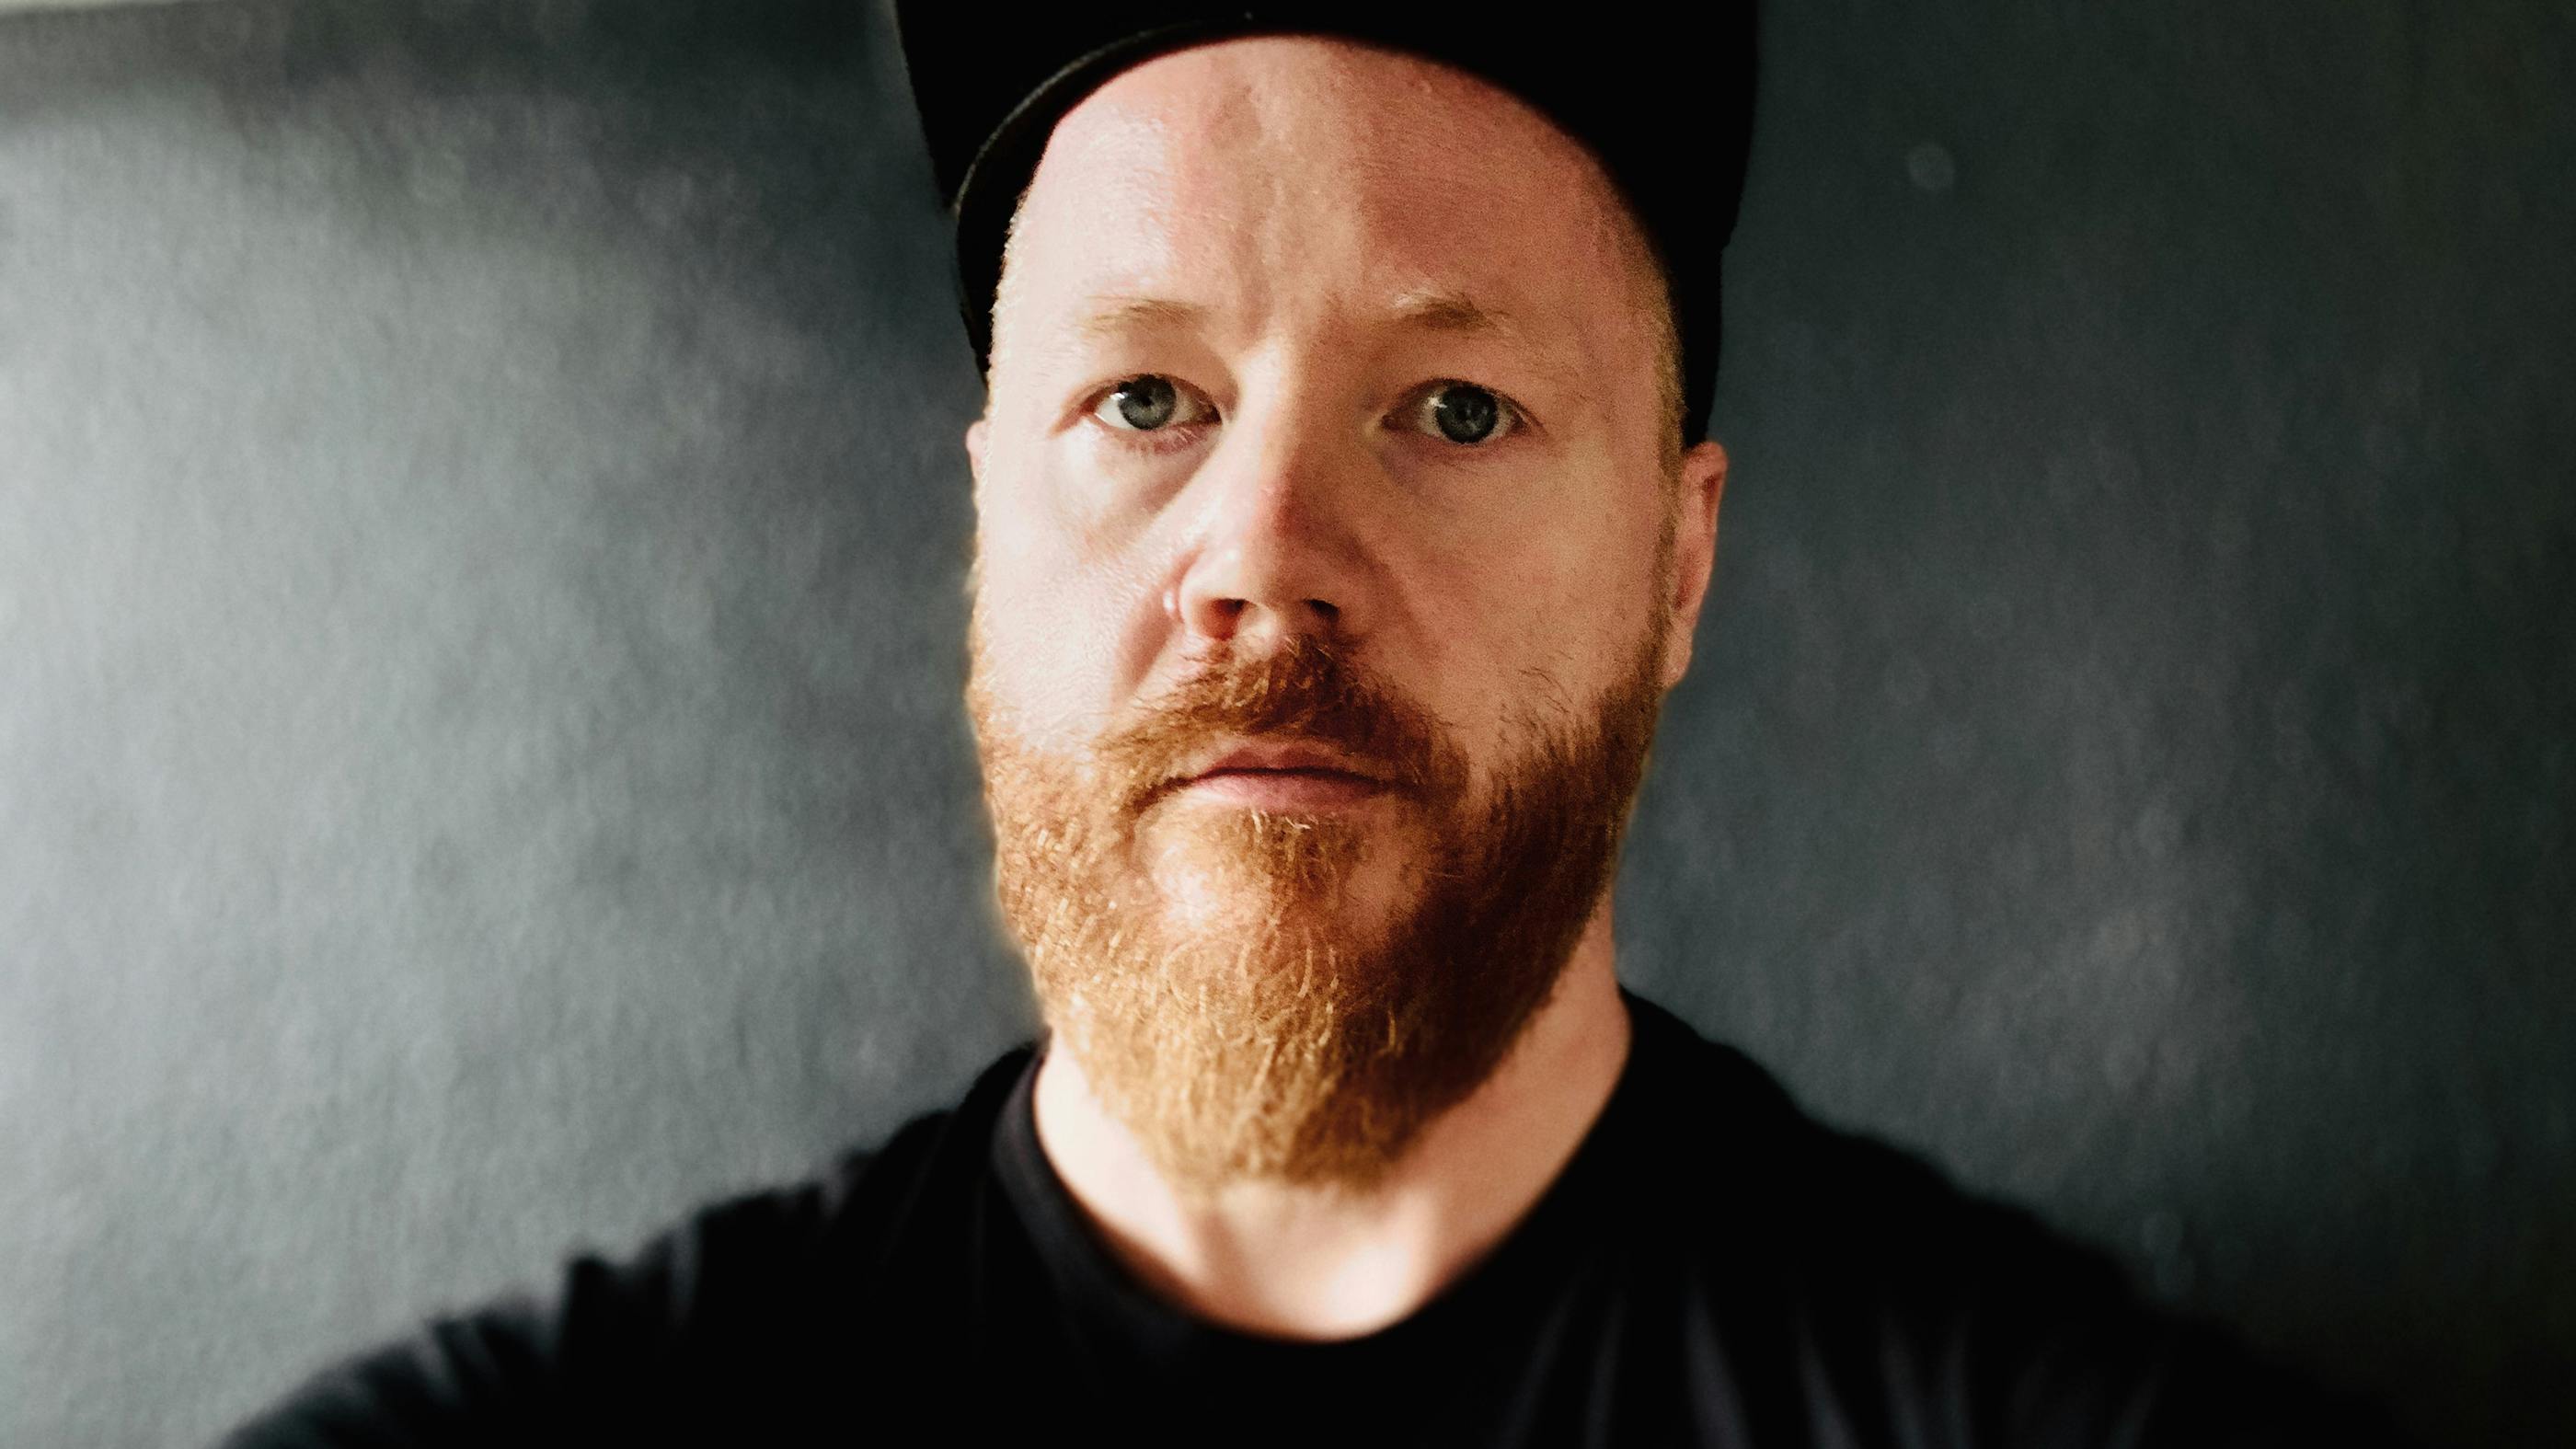 Ein Selfie von Autor Martin, im Hintergrund eine graue Wand. Martin hat blaue Augen, einen rötlichen Bart, trägt ein schwarzes T-Shirt und eine Basecap. 